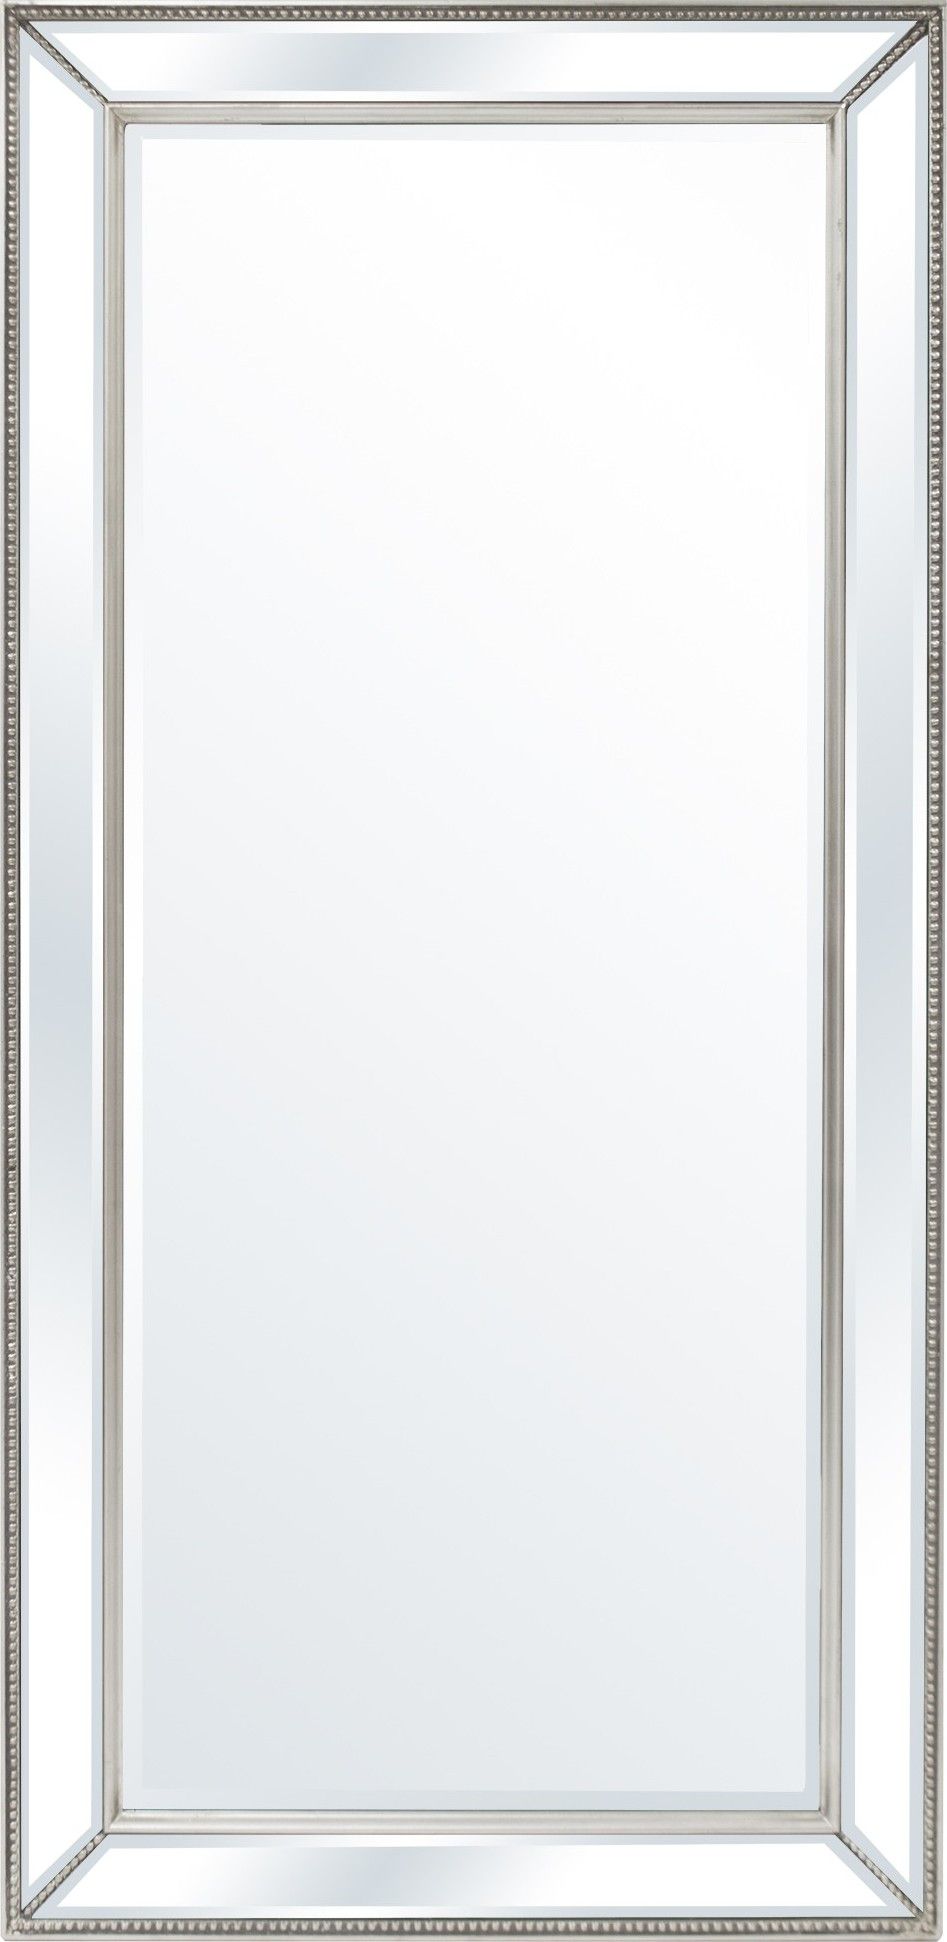 Skleněné zrcadlo velké 118383 Mdum - M DUM.cz